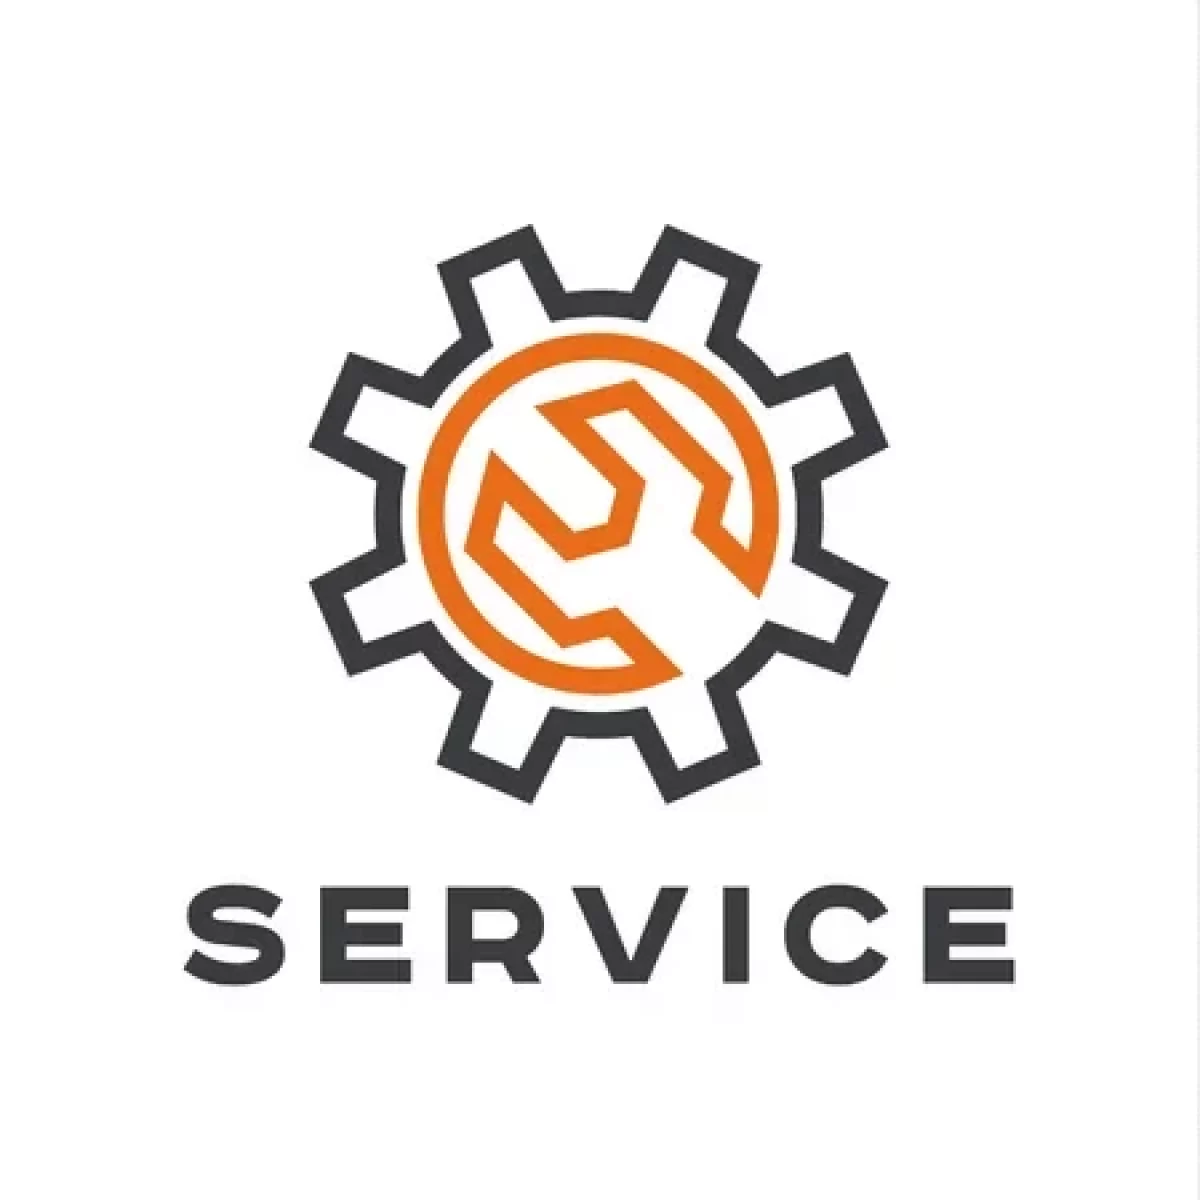 52551180-auto-service-clé-logo-signe-plat